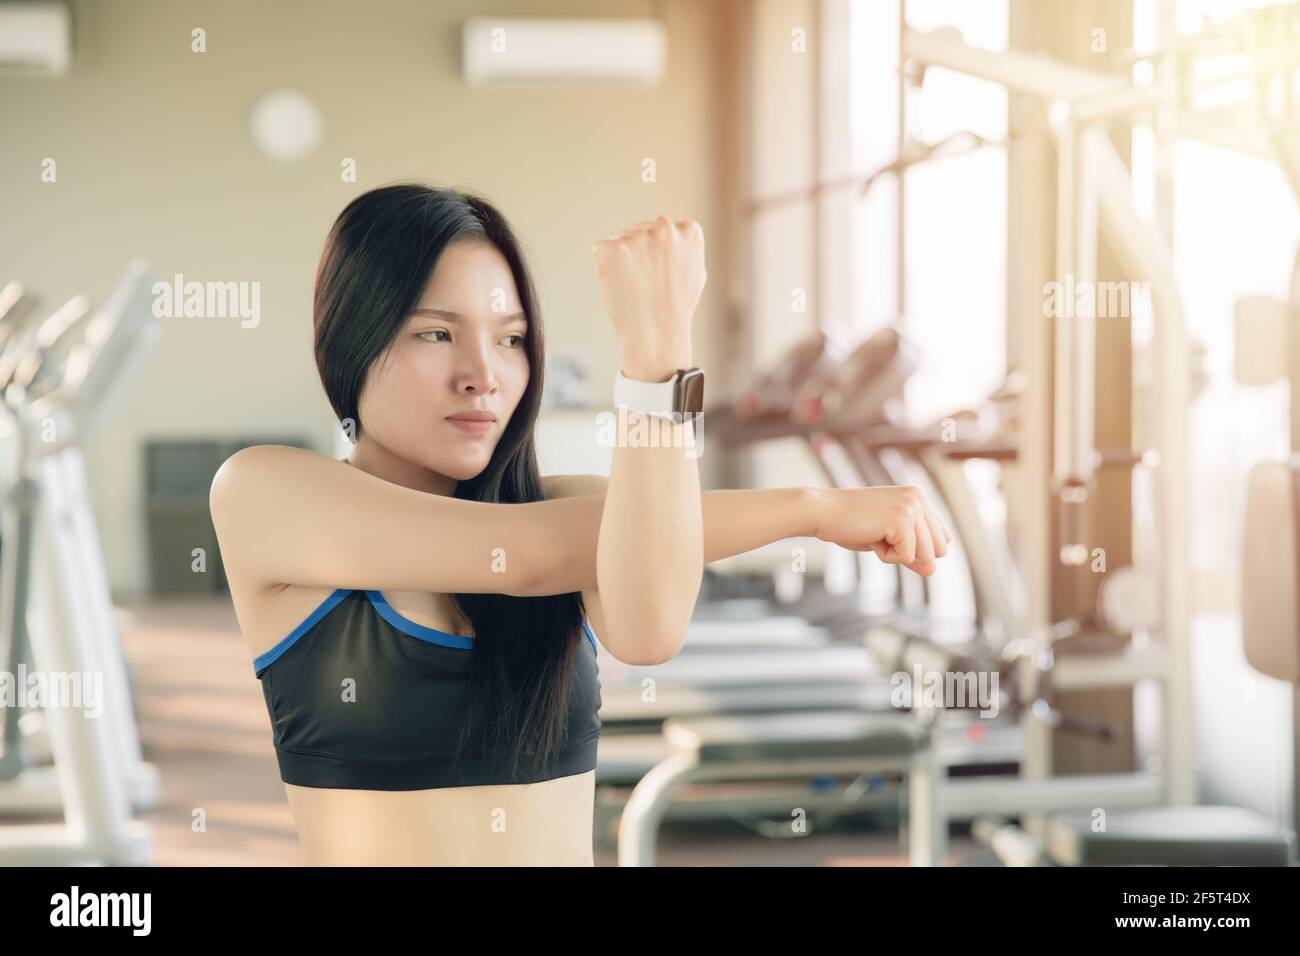 Giovane donna asiatica sana che fa stretching del muscolo del braccio, si riscalda prima di esercitarsi. Foto Stock